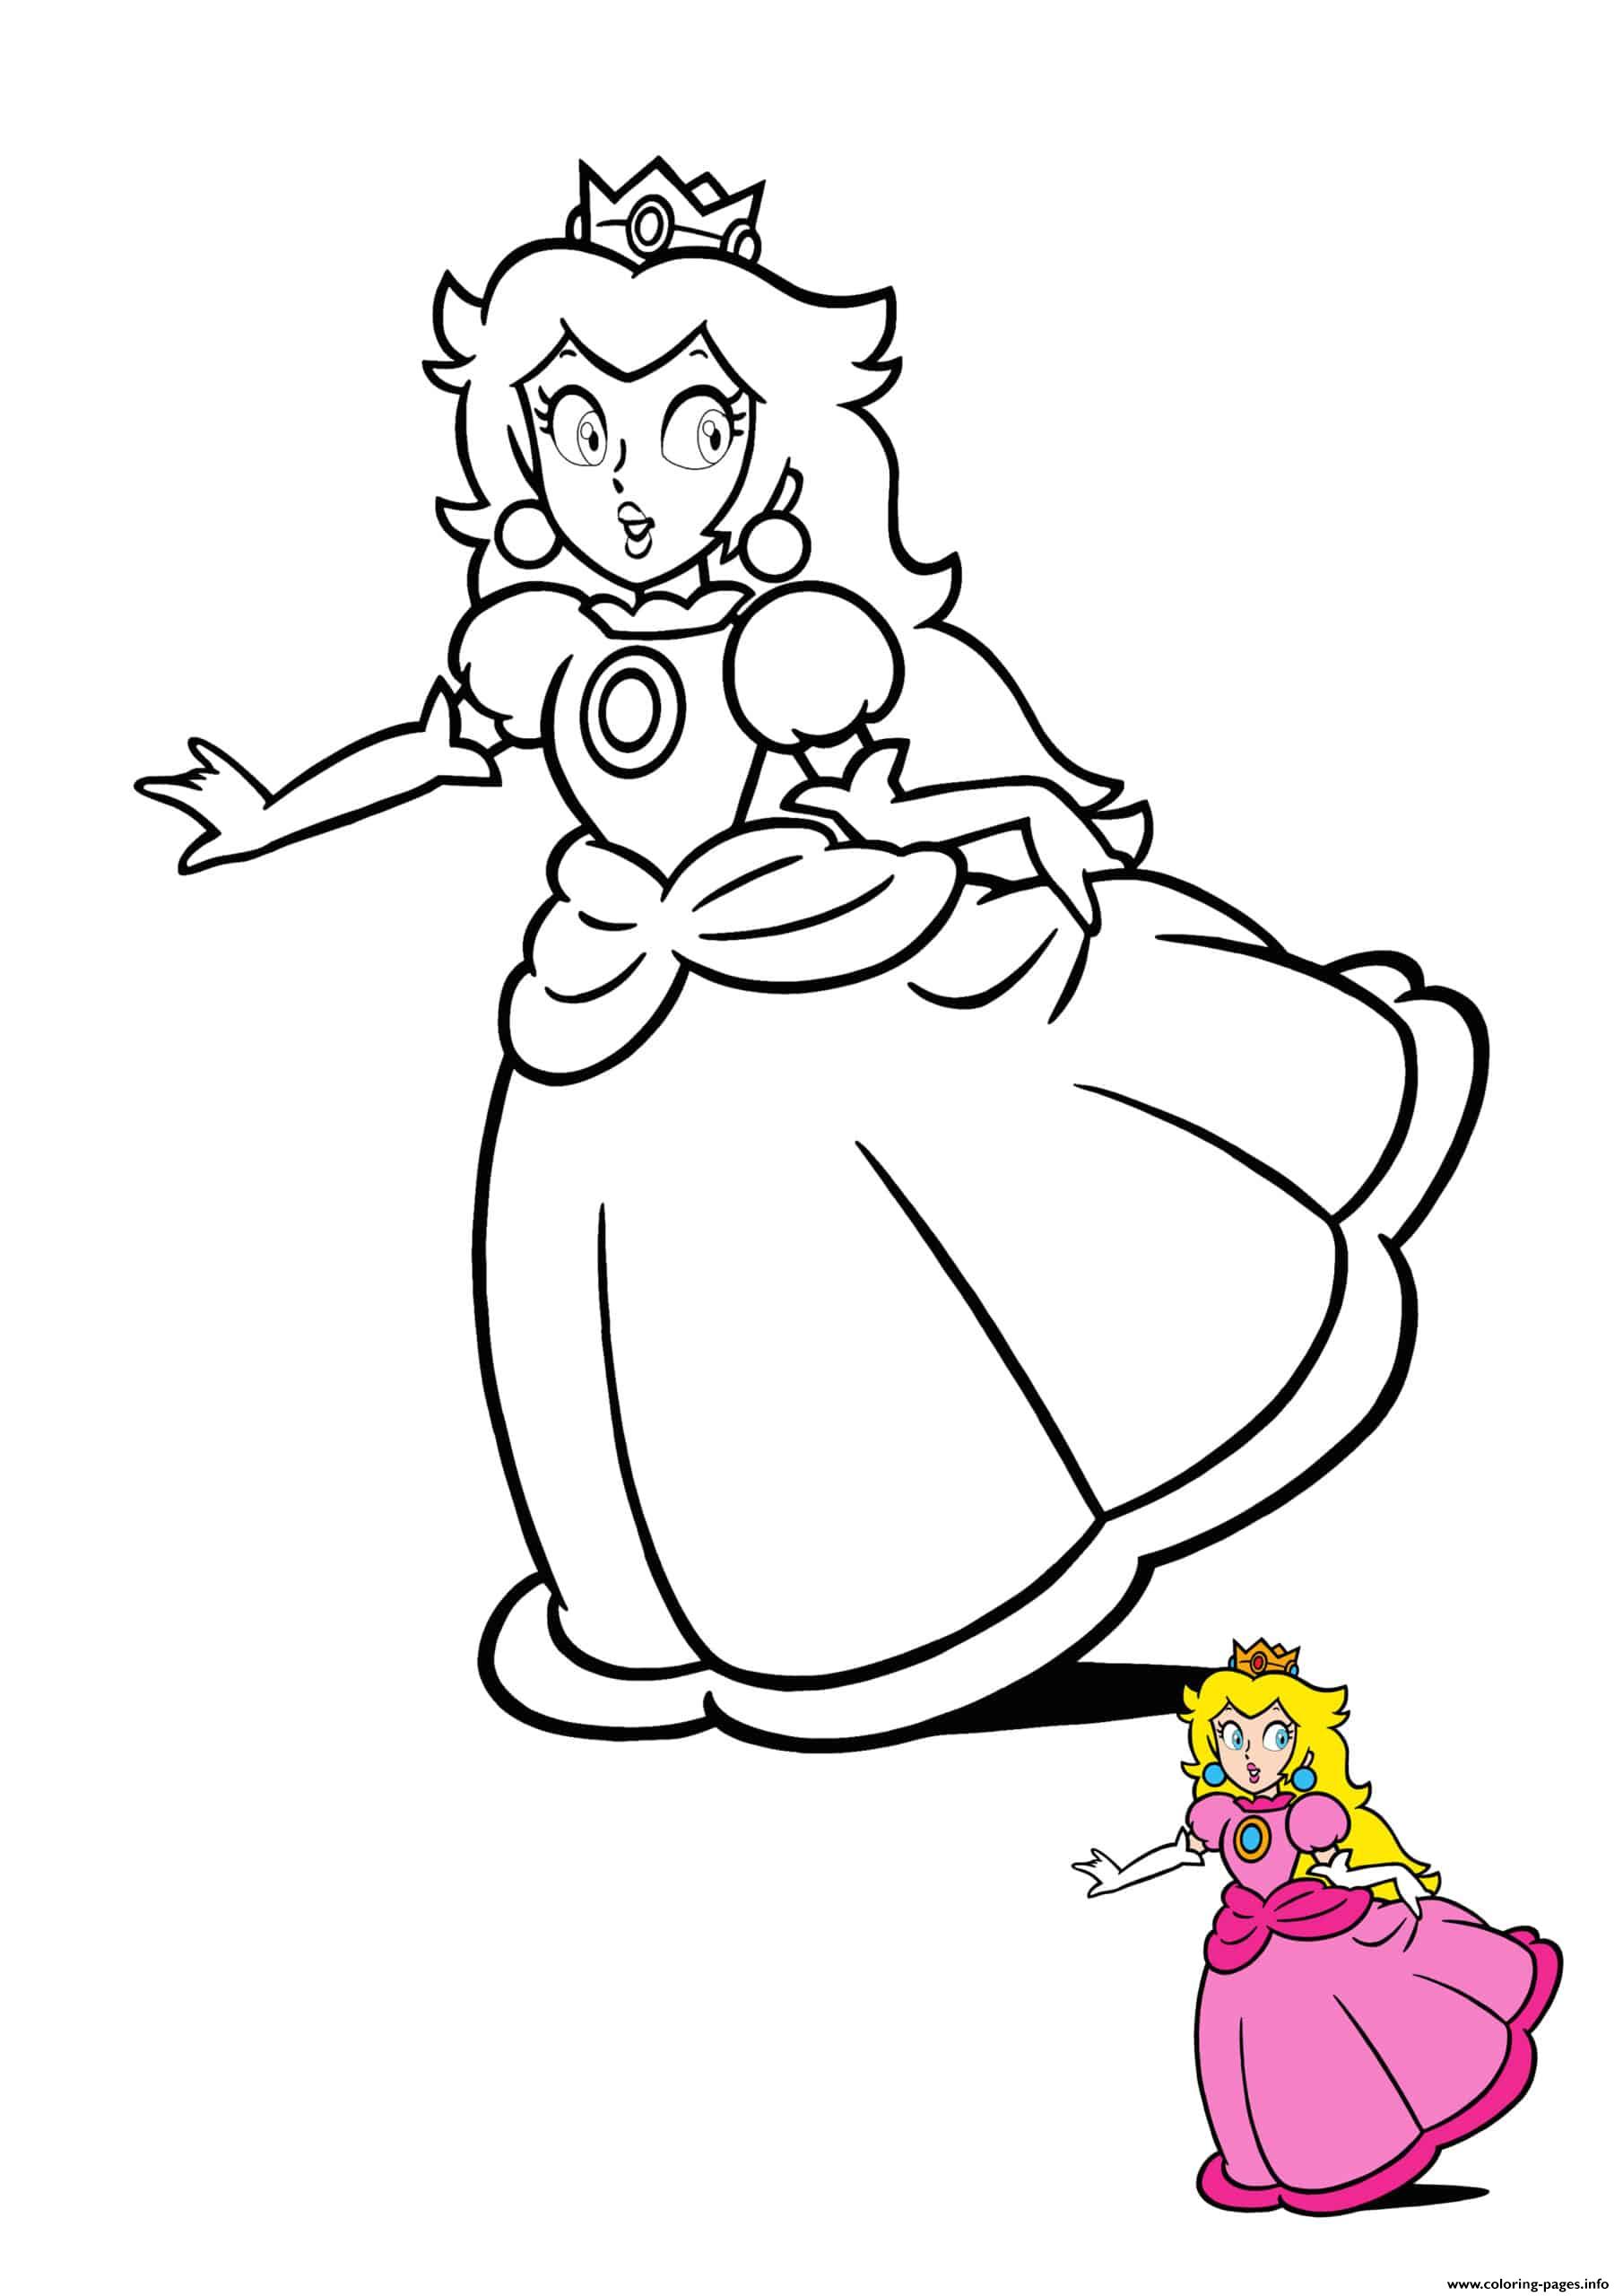 Princess Peach Coloring page Printable